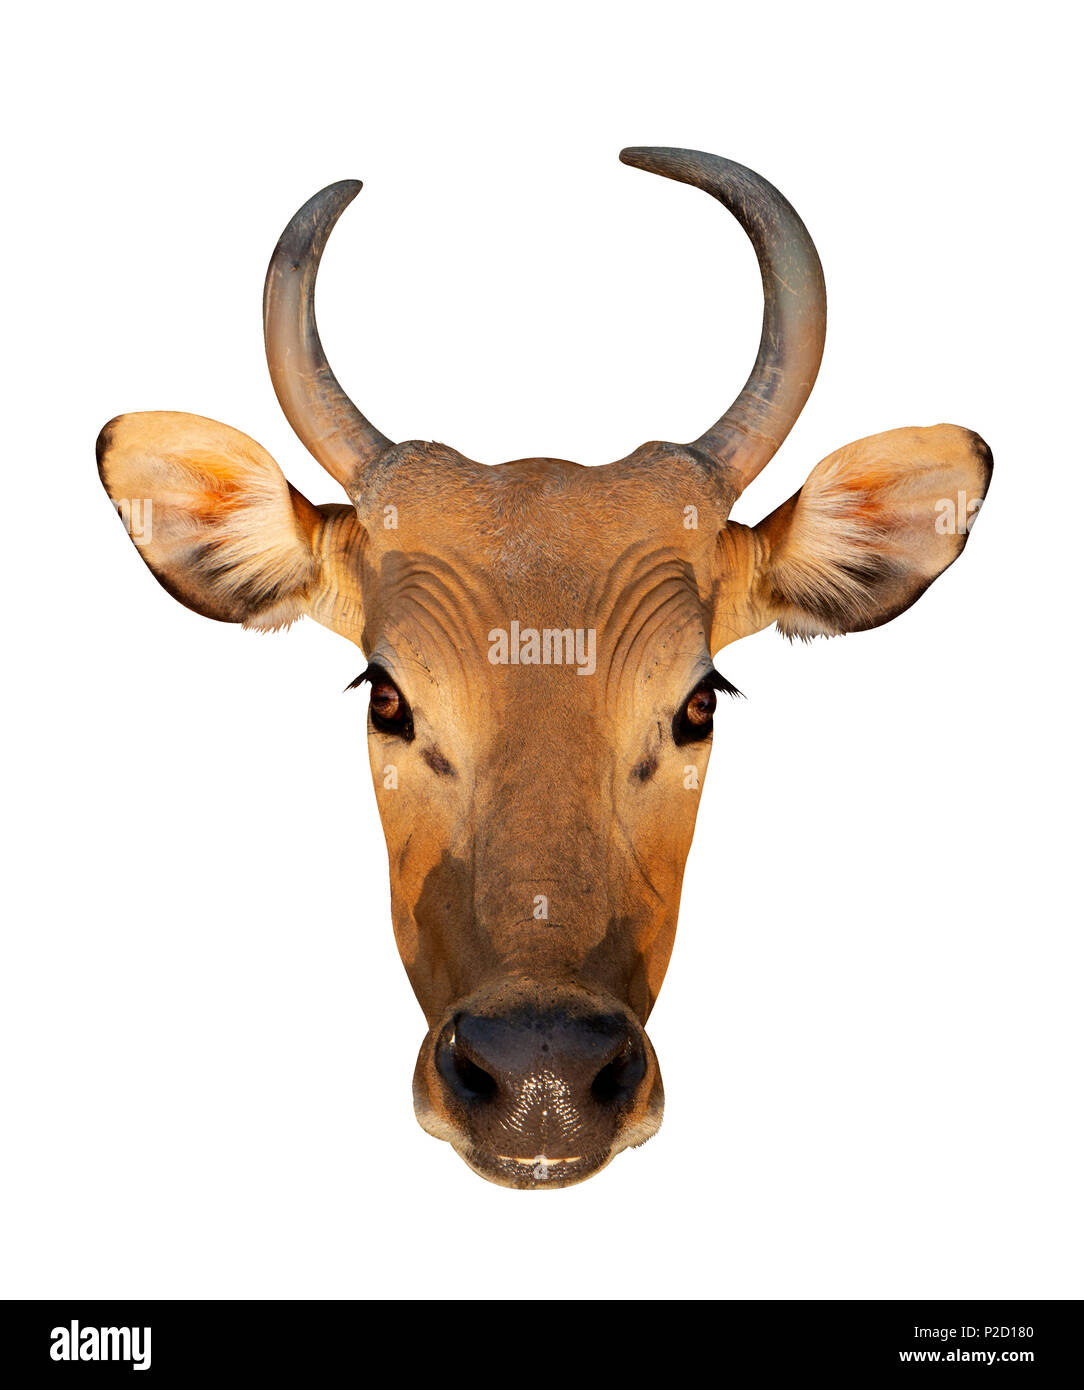 Bos javanicus Kopf. Roten Ochsen ist eine wilde Kuh. Kopf auf weißem Hintergrund isolieren. Stockfoto